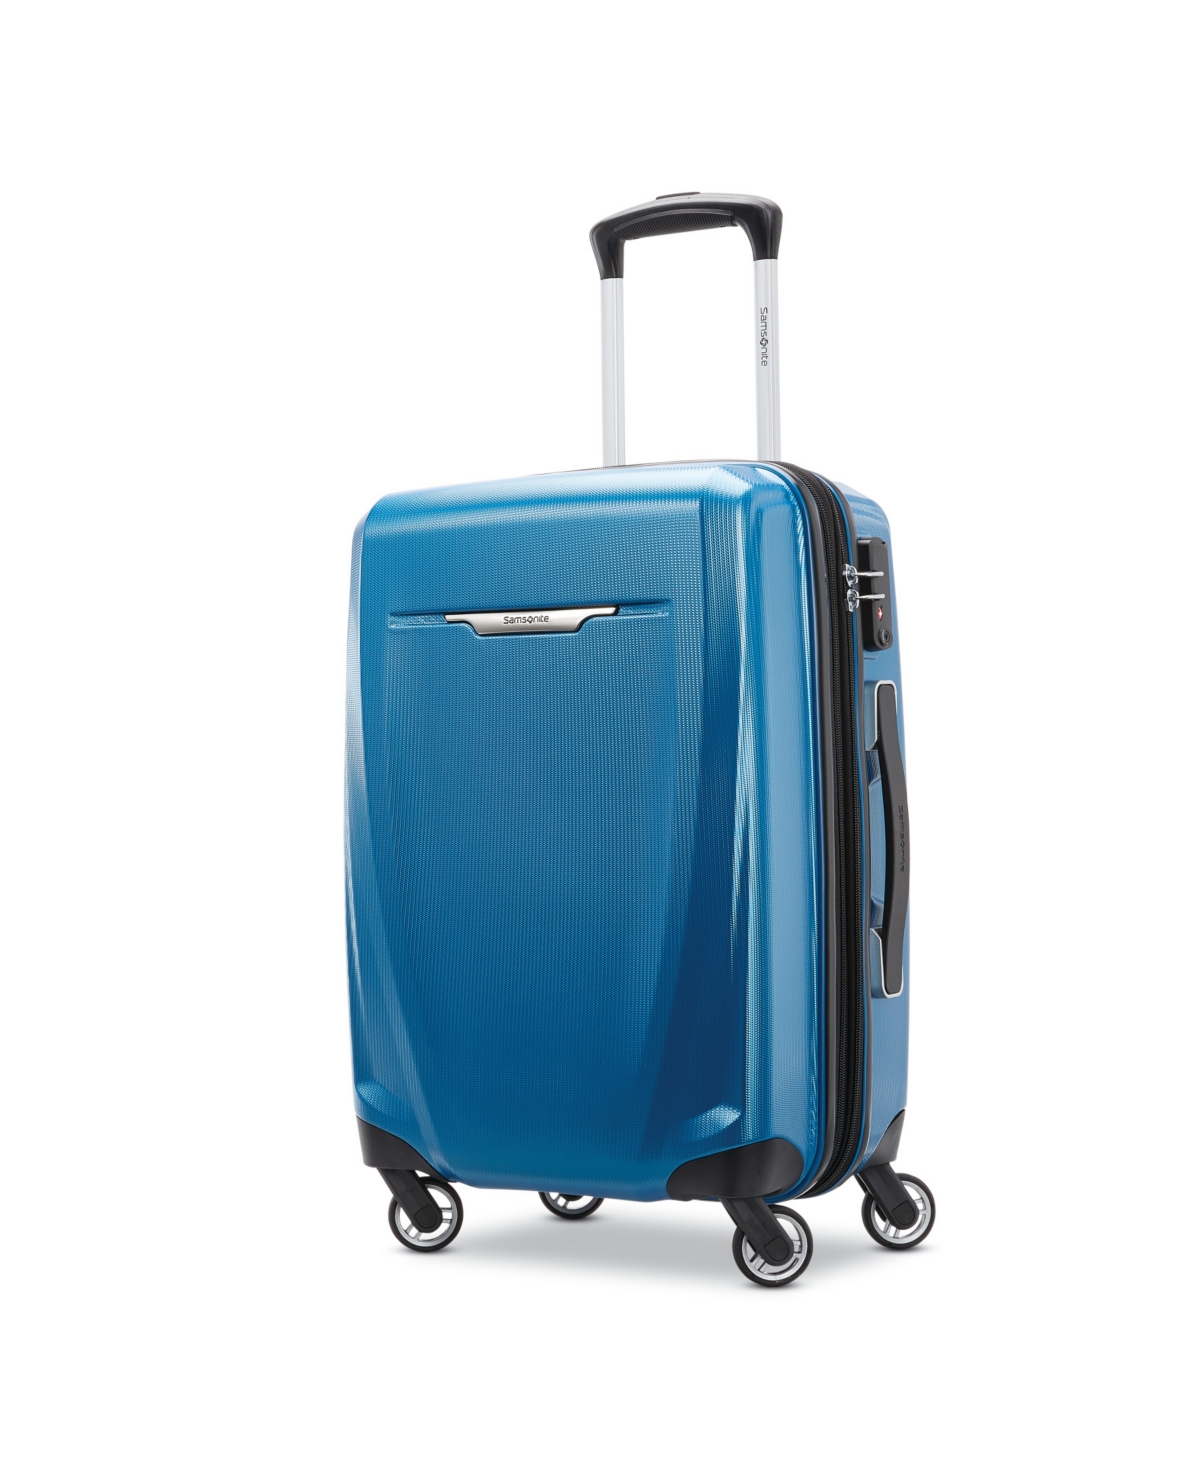 Samsonite Winfield 3 Dlx 20 Spinner Suitcase In Blue/navy